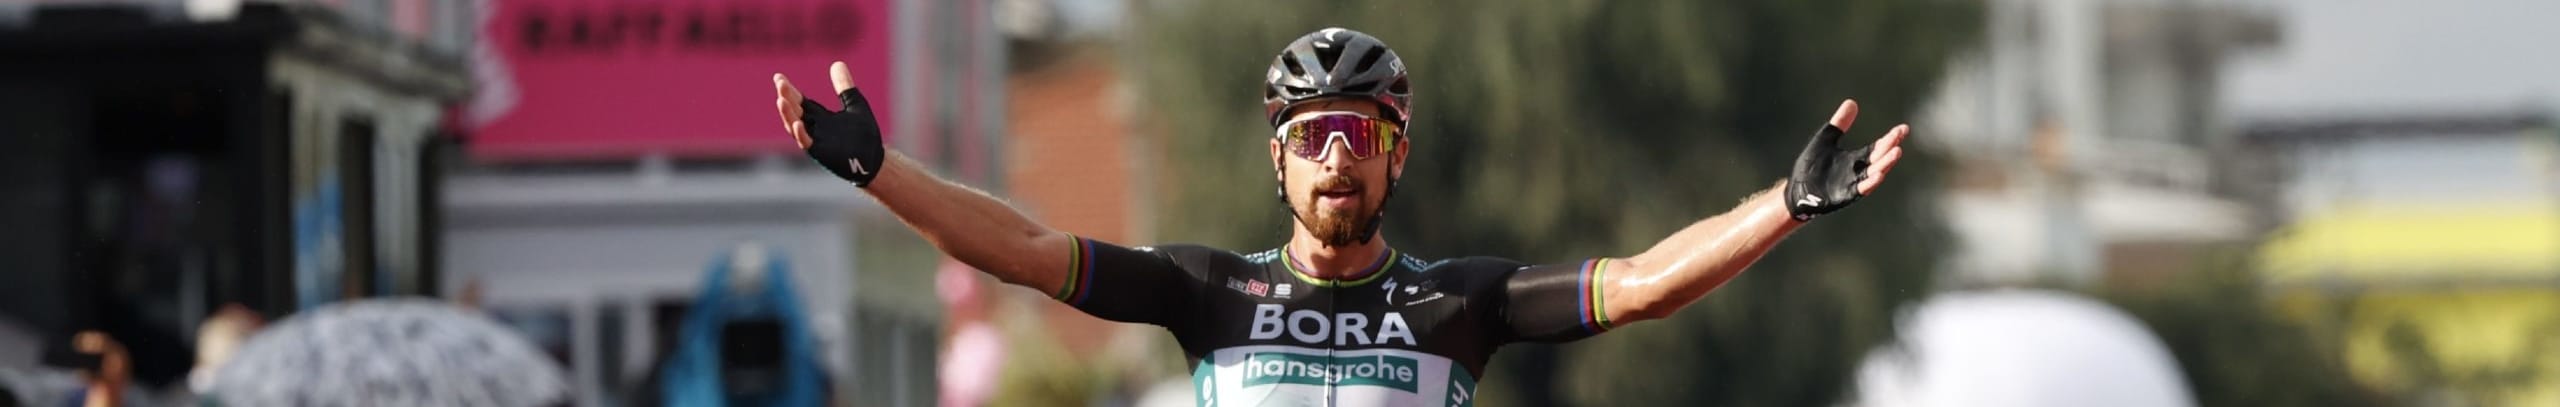 Giro d'Italia 2020, quote e favoriti per la tappa 11: favorito Démare, ma Sagan è tornato